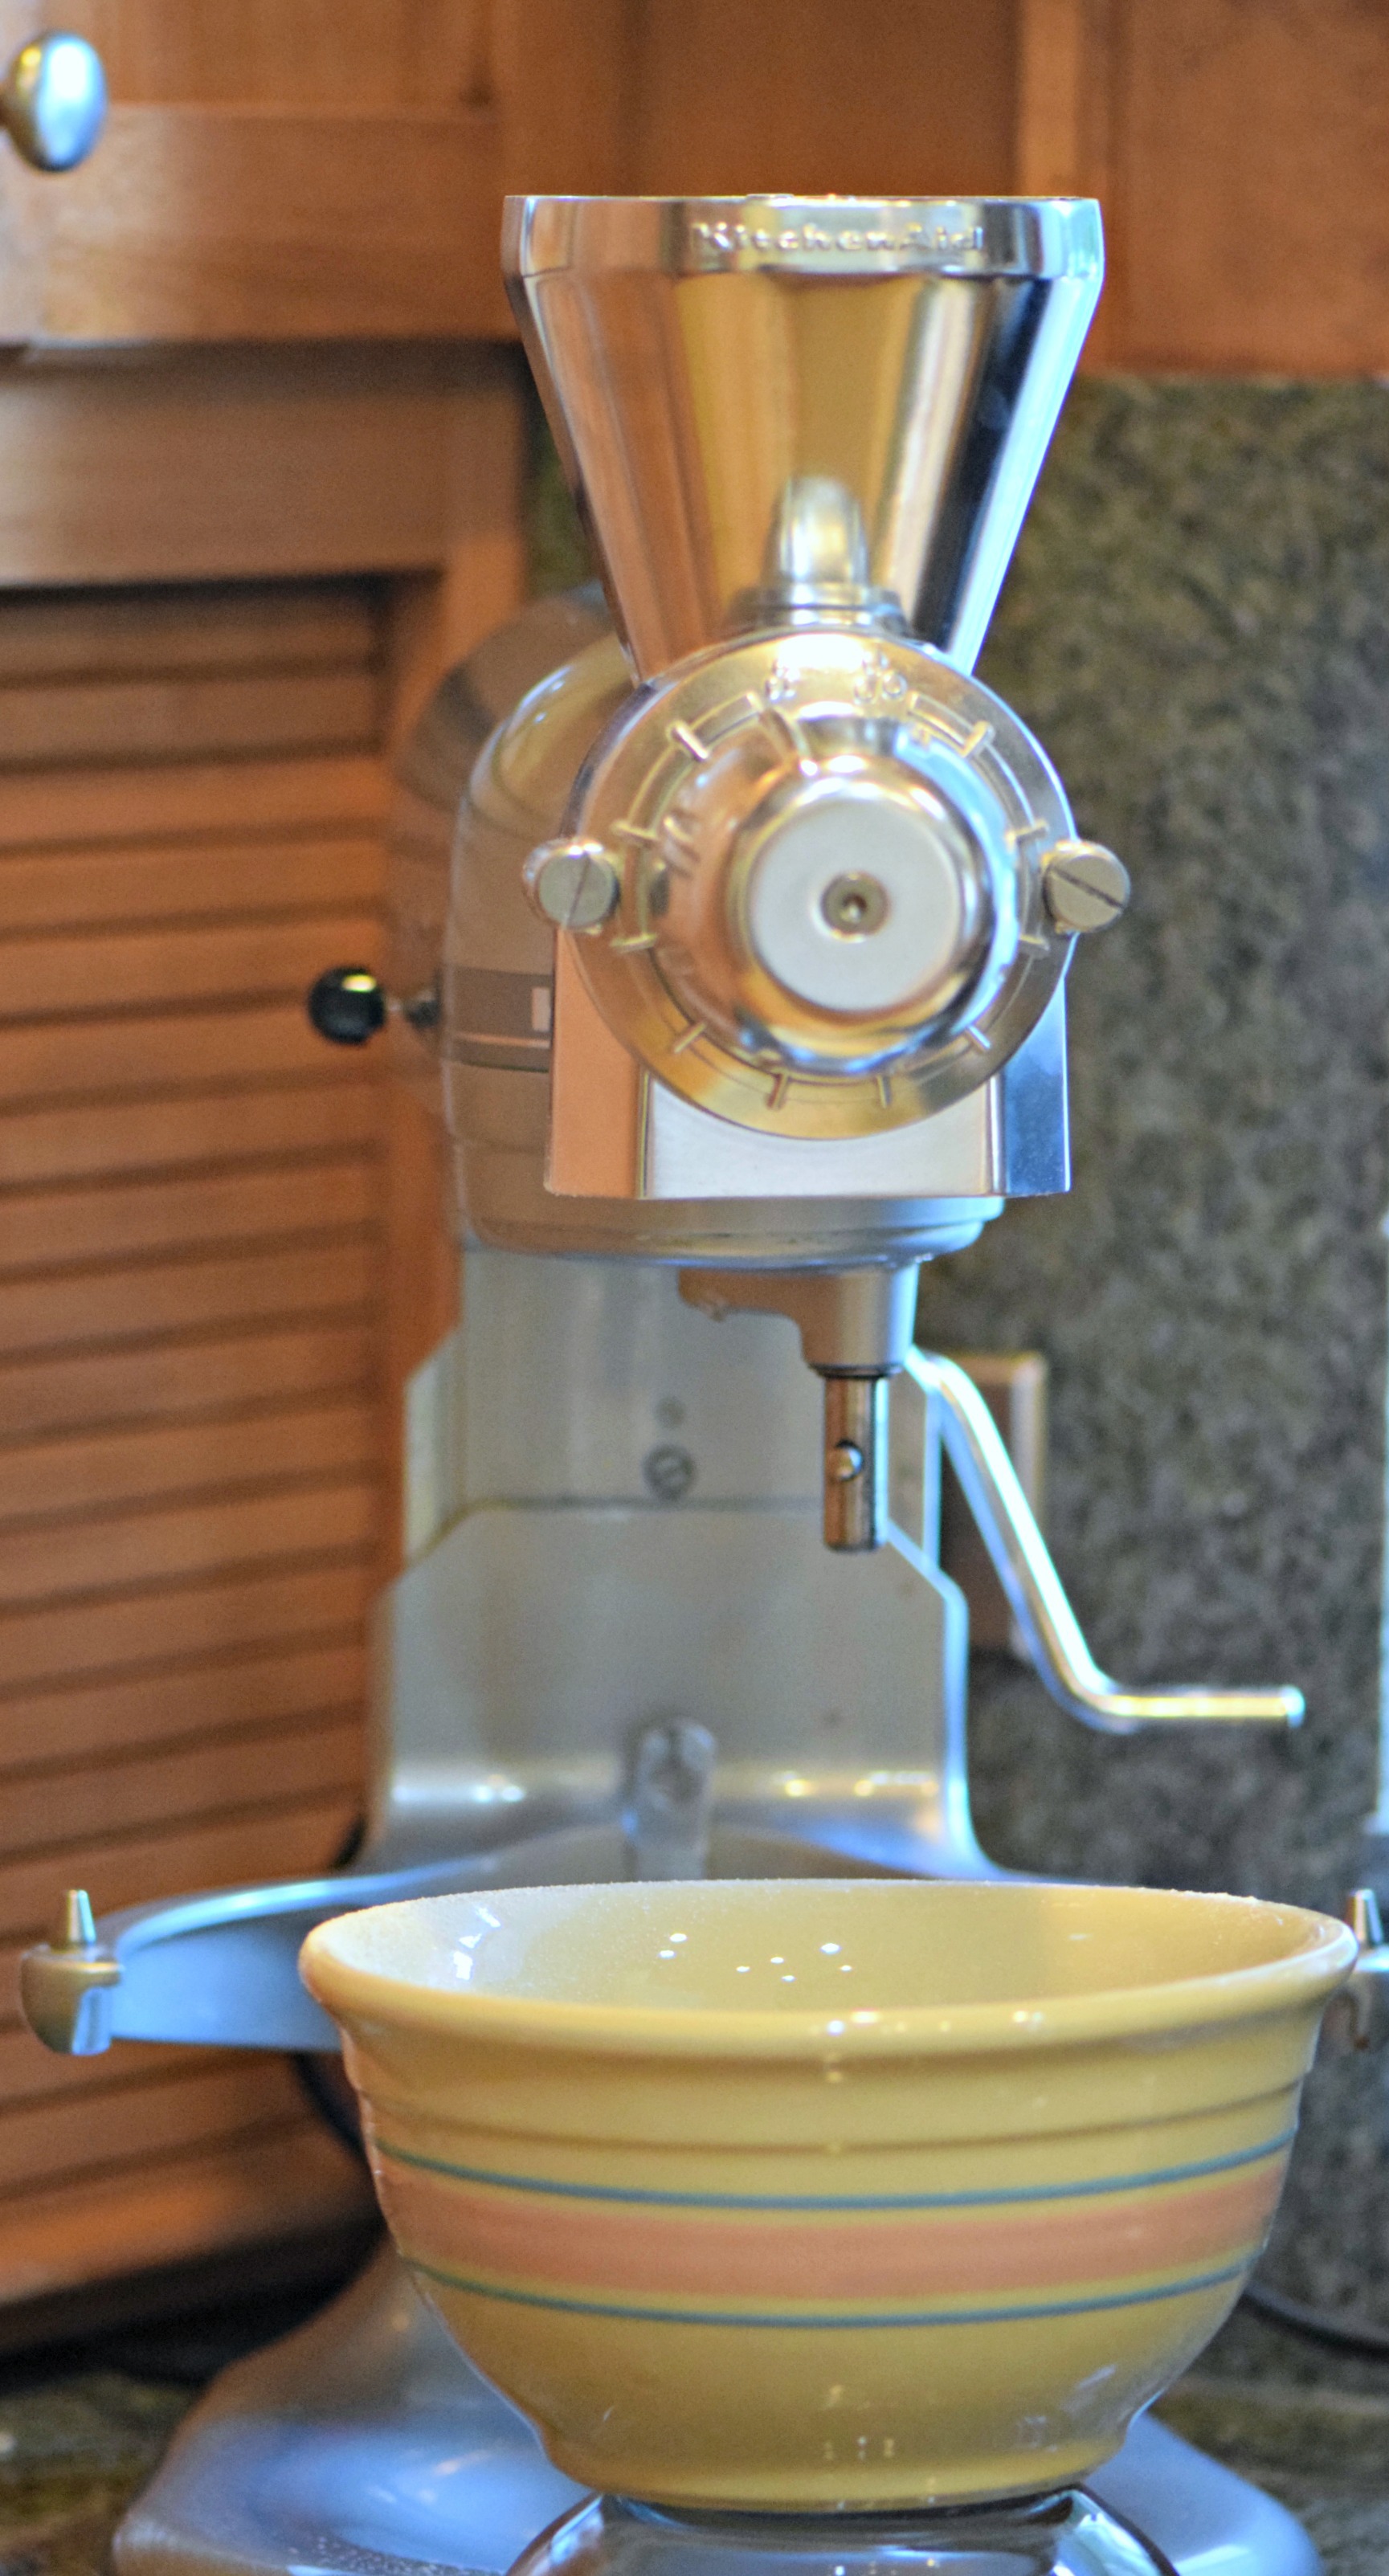 Vintage KitchenAid Hobart Grain Mill Coffee Grinder Attachment